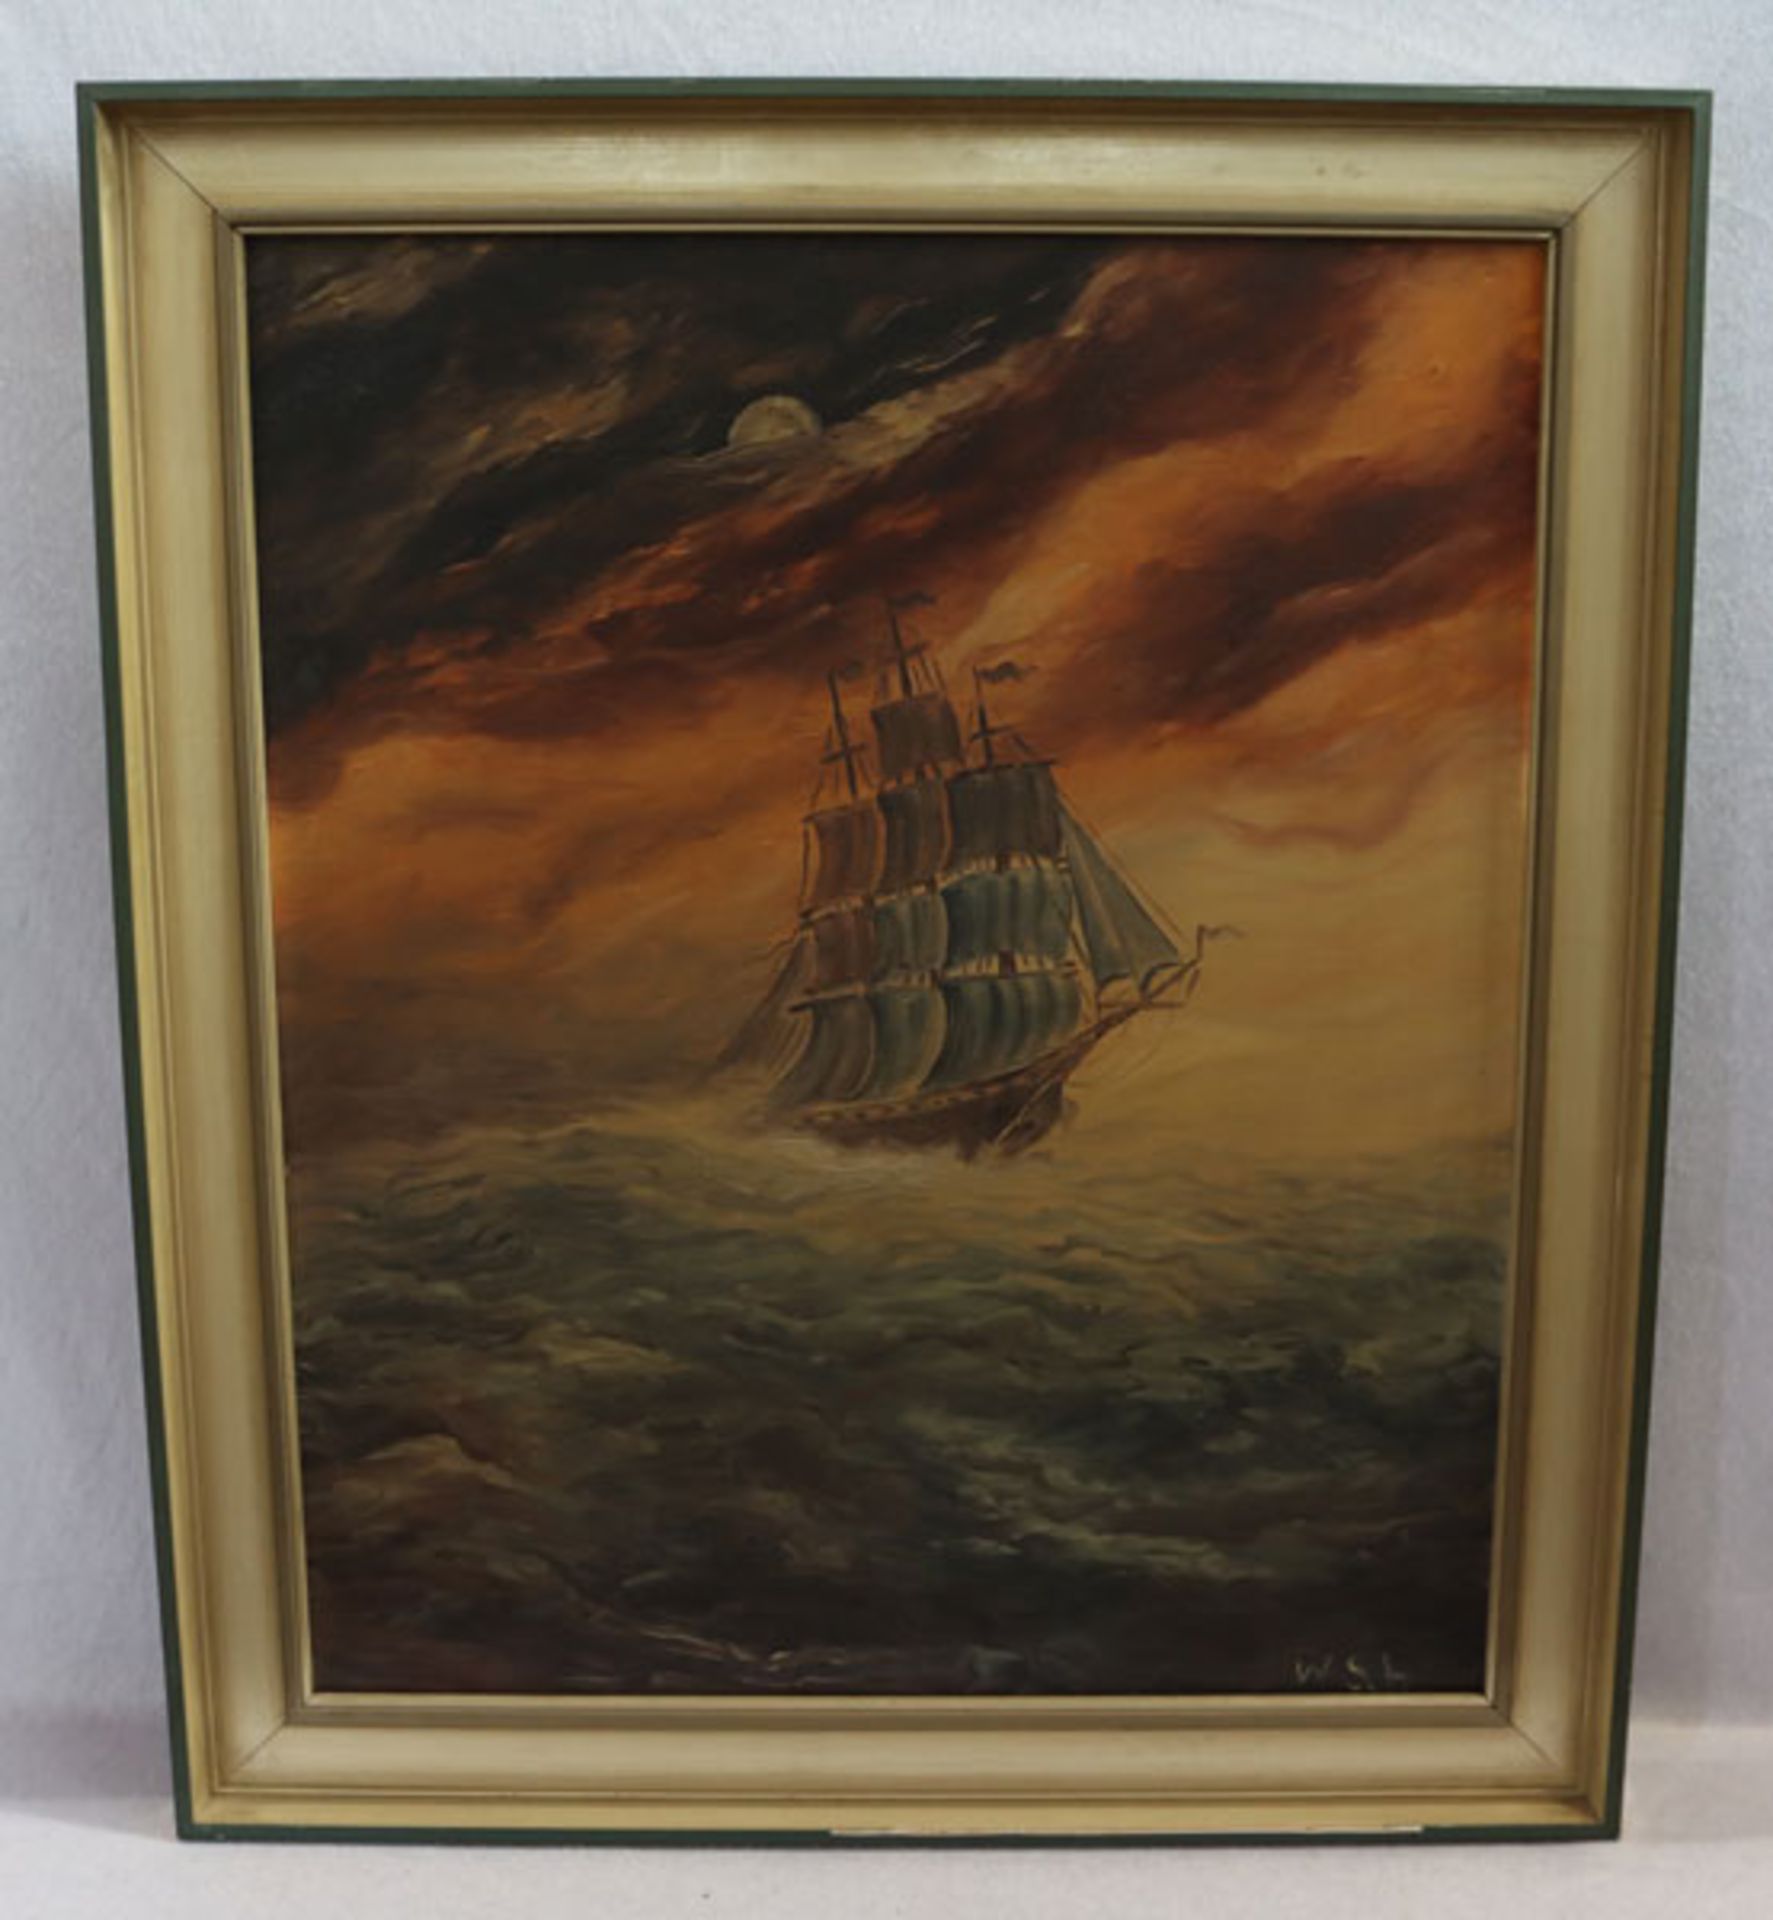 Gemälde ÖL/LW 'Segelboot', monogrammiert W Sch, gerahmt, Rahmen bestossen, incl. Rahmen 70 cm x 60